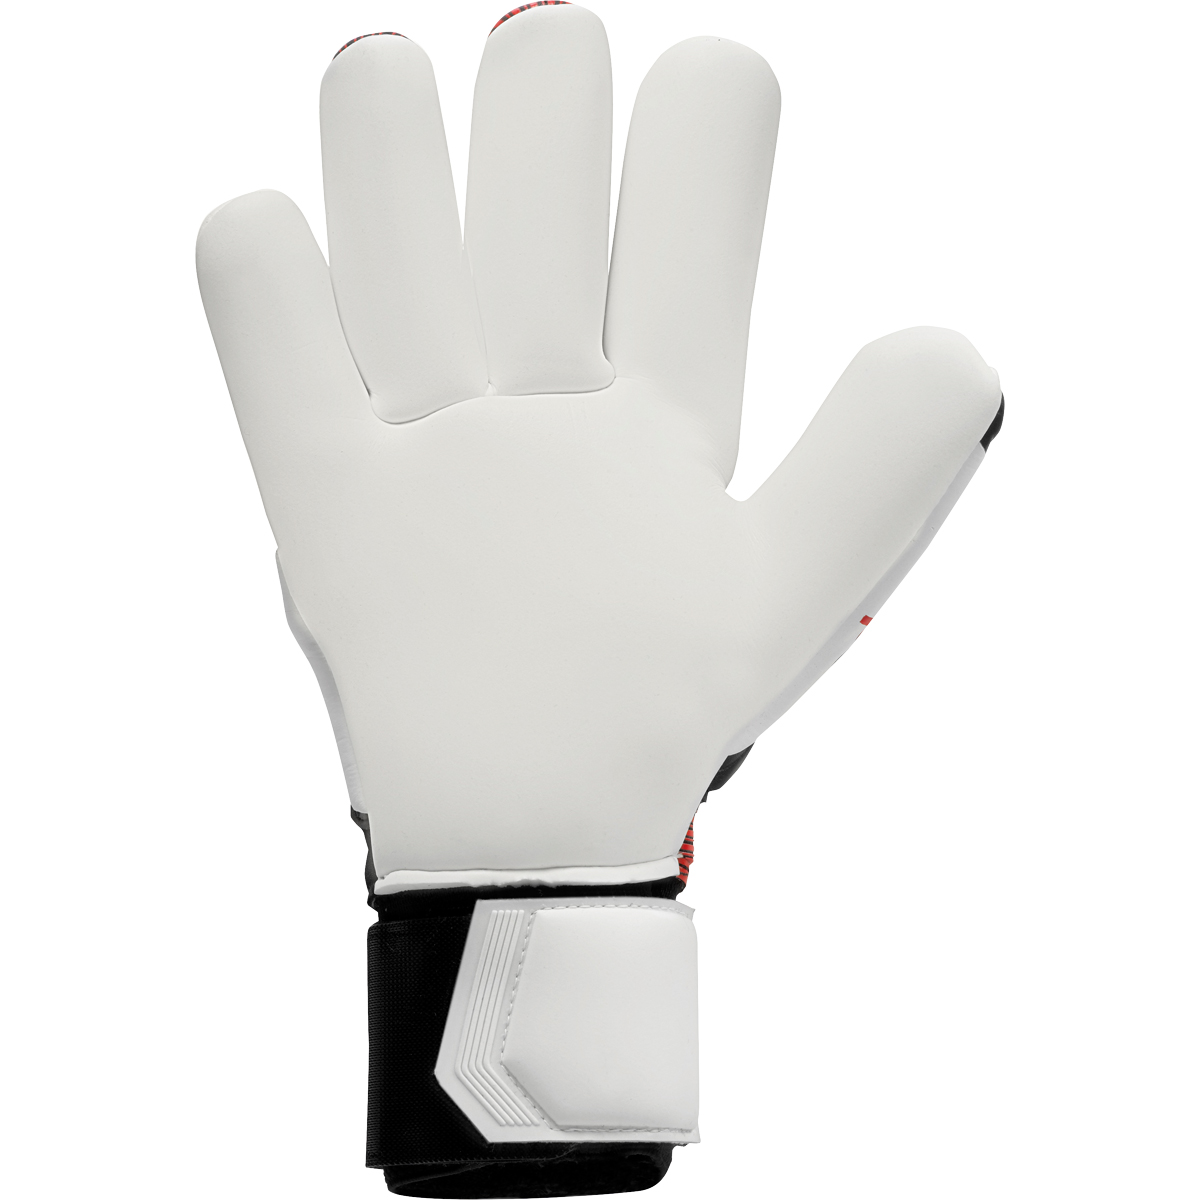 uhlsport Torwarthandschuh Powerline Absolutgrip Finger Surround schwarz/rot/weiß